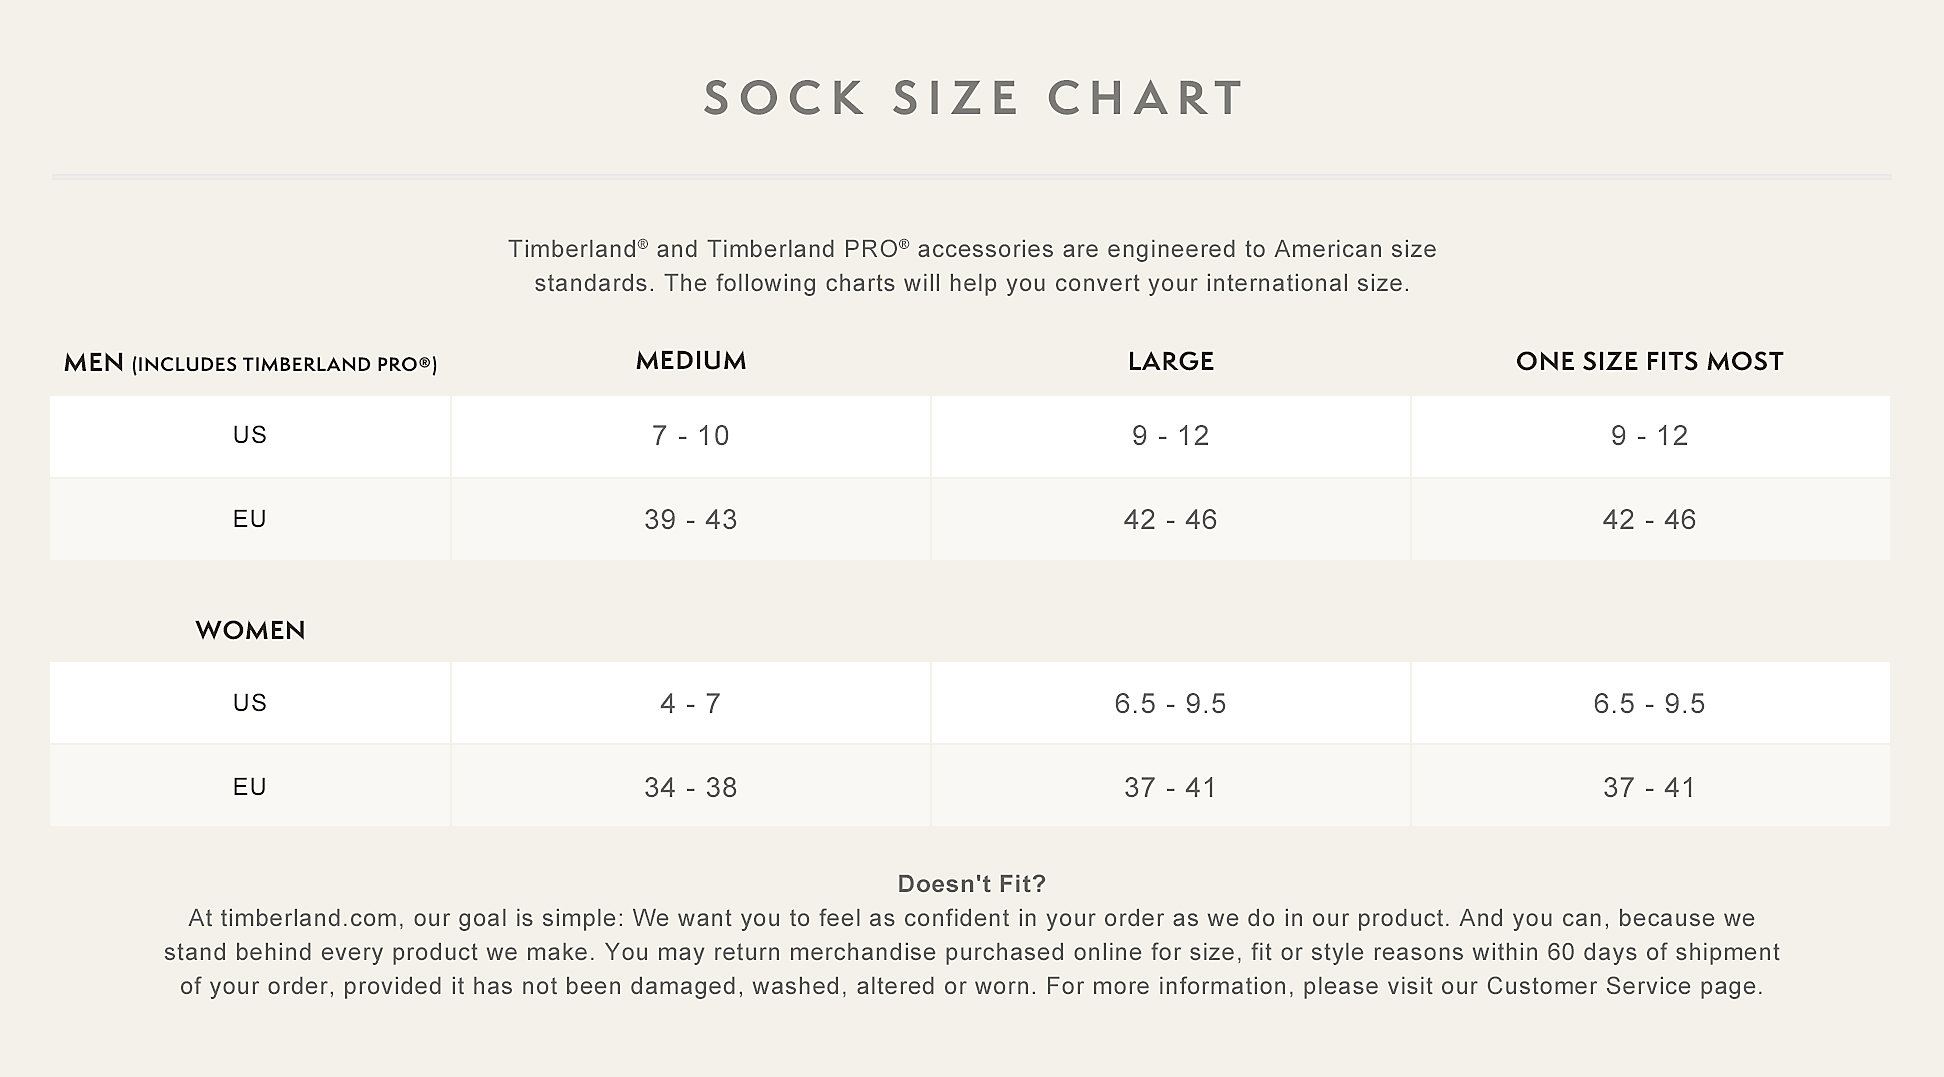 socks-size-chart-timberland